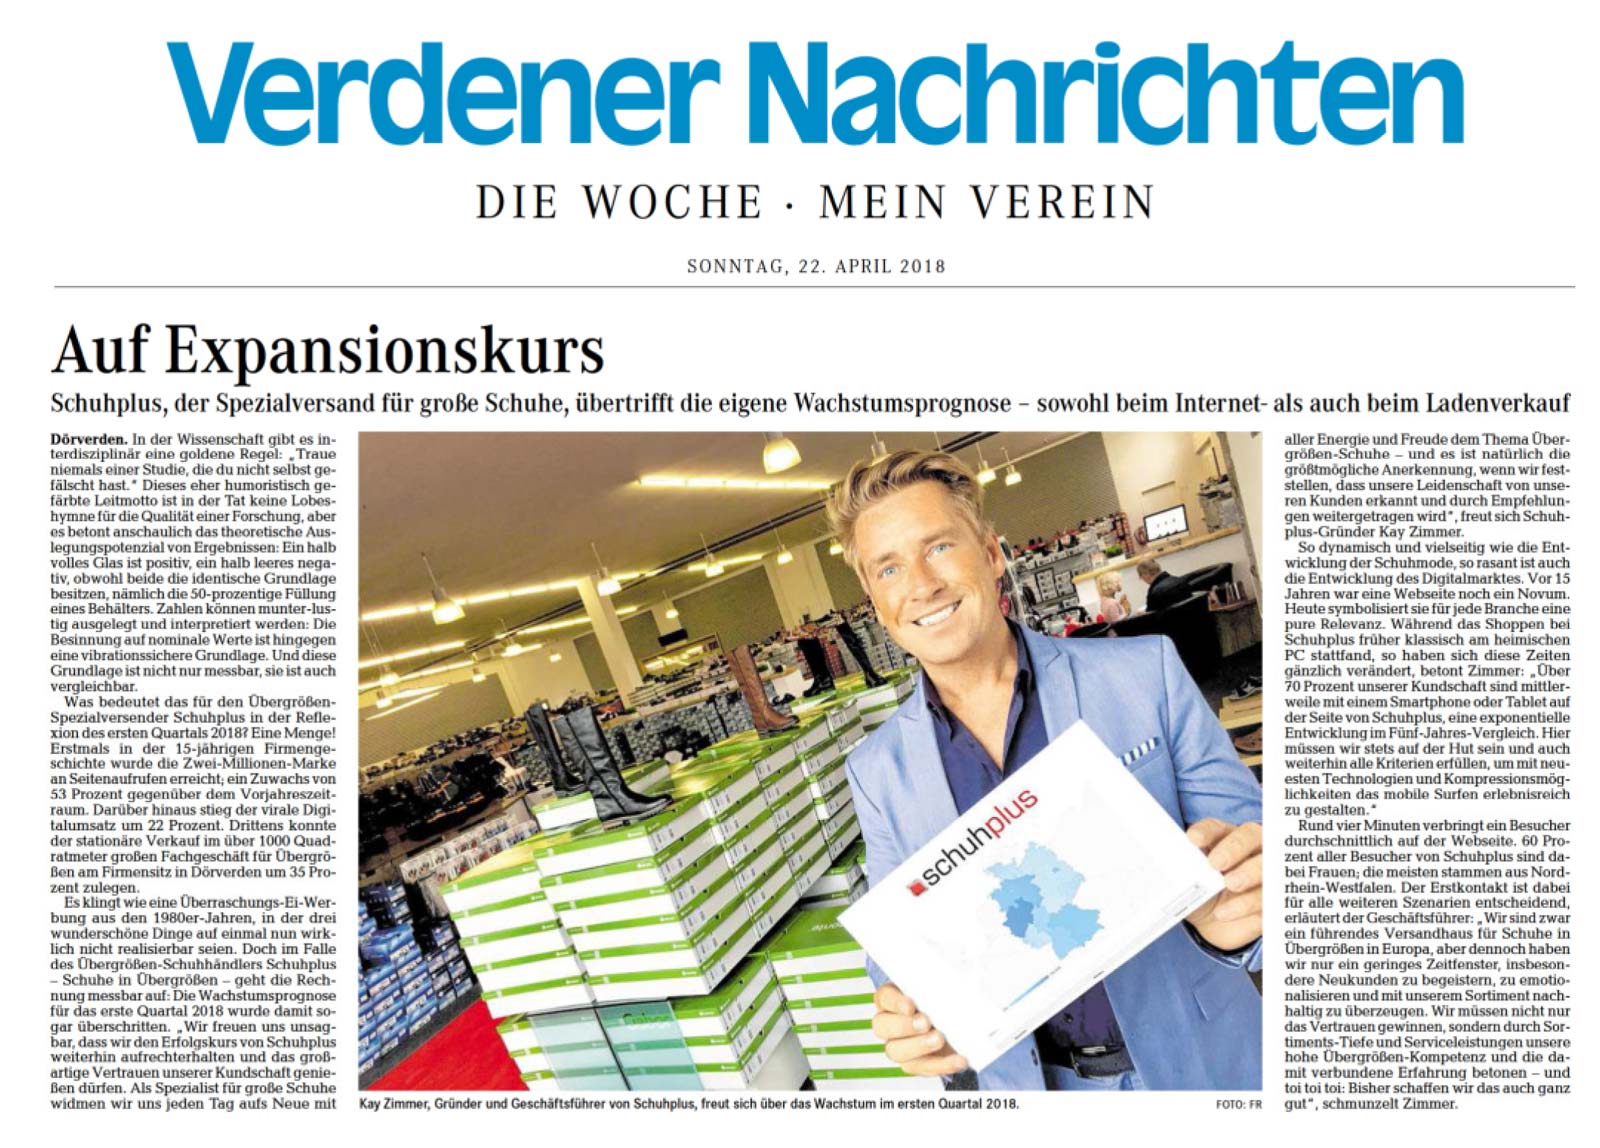 Zeitungsartikel über Kay Zimmer in den ‚Verdener Nachrichten‘ zur Expansion seines Unternehmens schuhplus